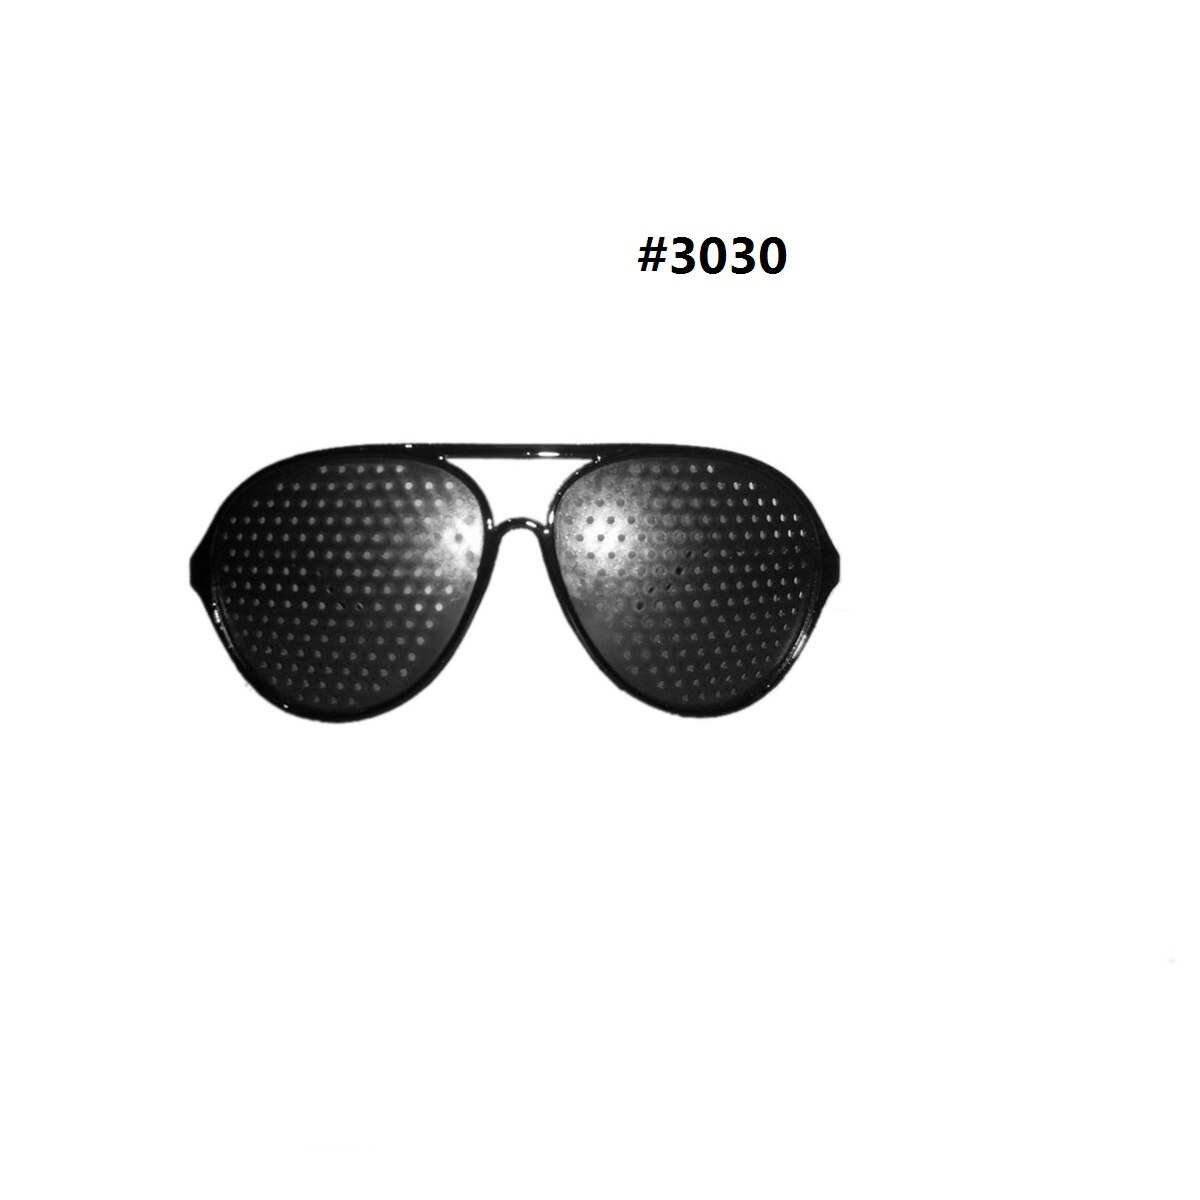 Schwarz Sonnenbrille Anti-müdigkeit Vision Pflege Mikroporöse Gläser Auge ÜSpund SehvermöGen Anti-myopie unisex Brillen: 3030